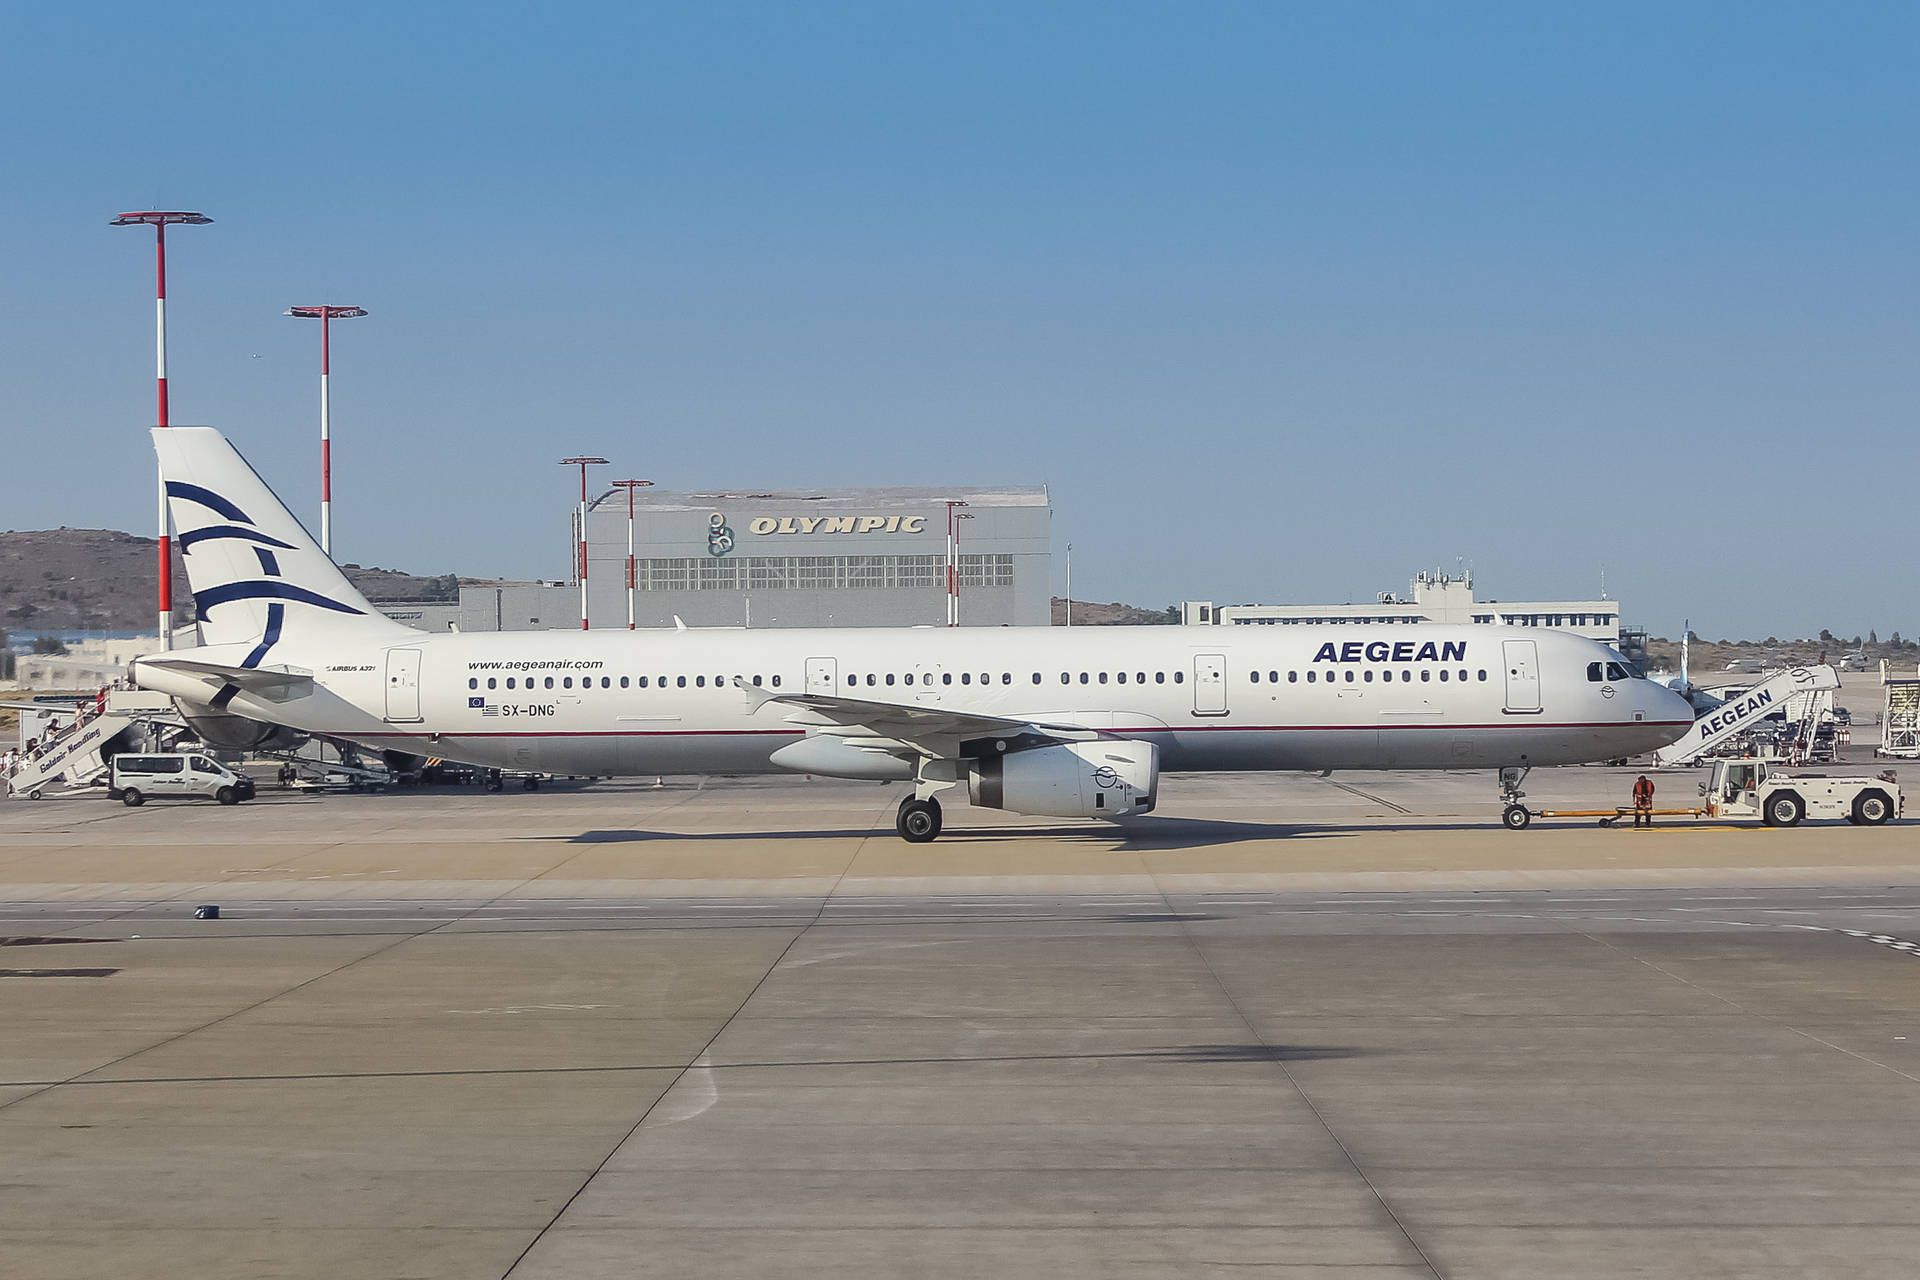 Aereiaegean Airlines, Vettore Di Bandiera, Airbus A321-231, Aereo Passeggeri. Sfondo